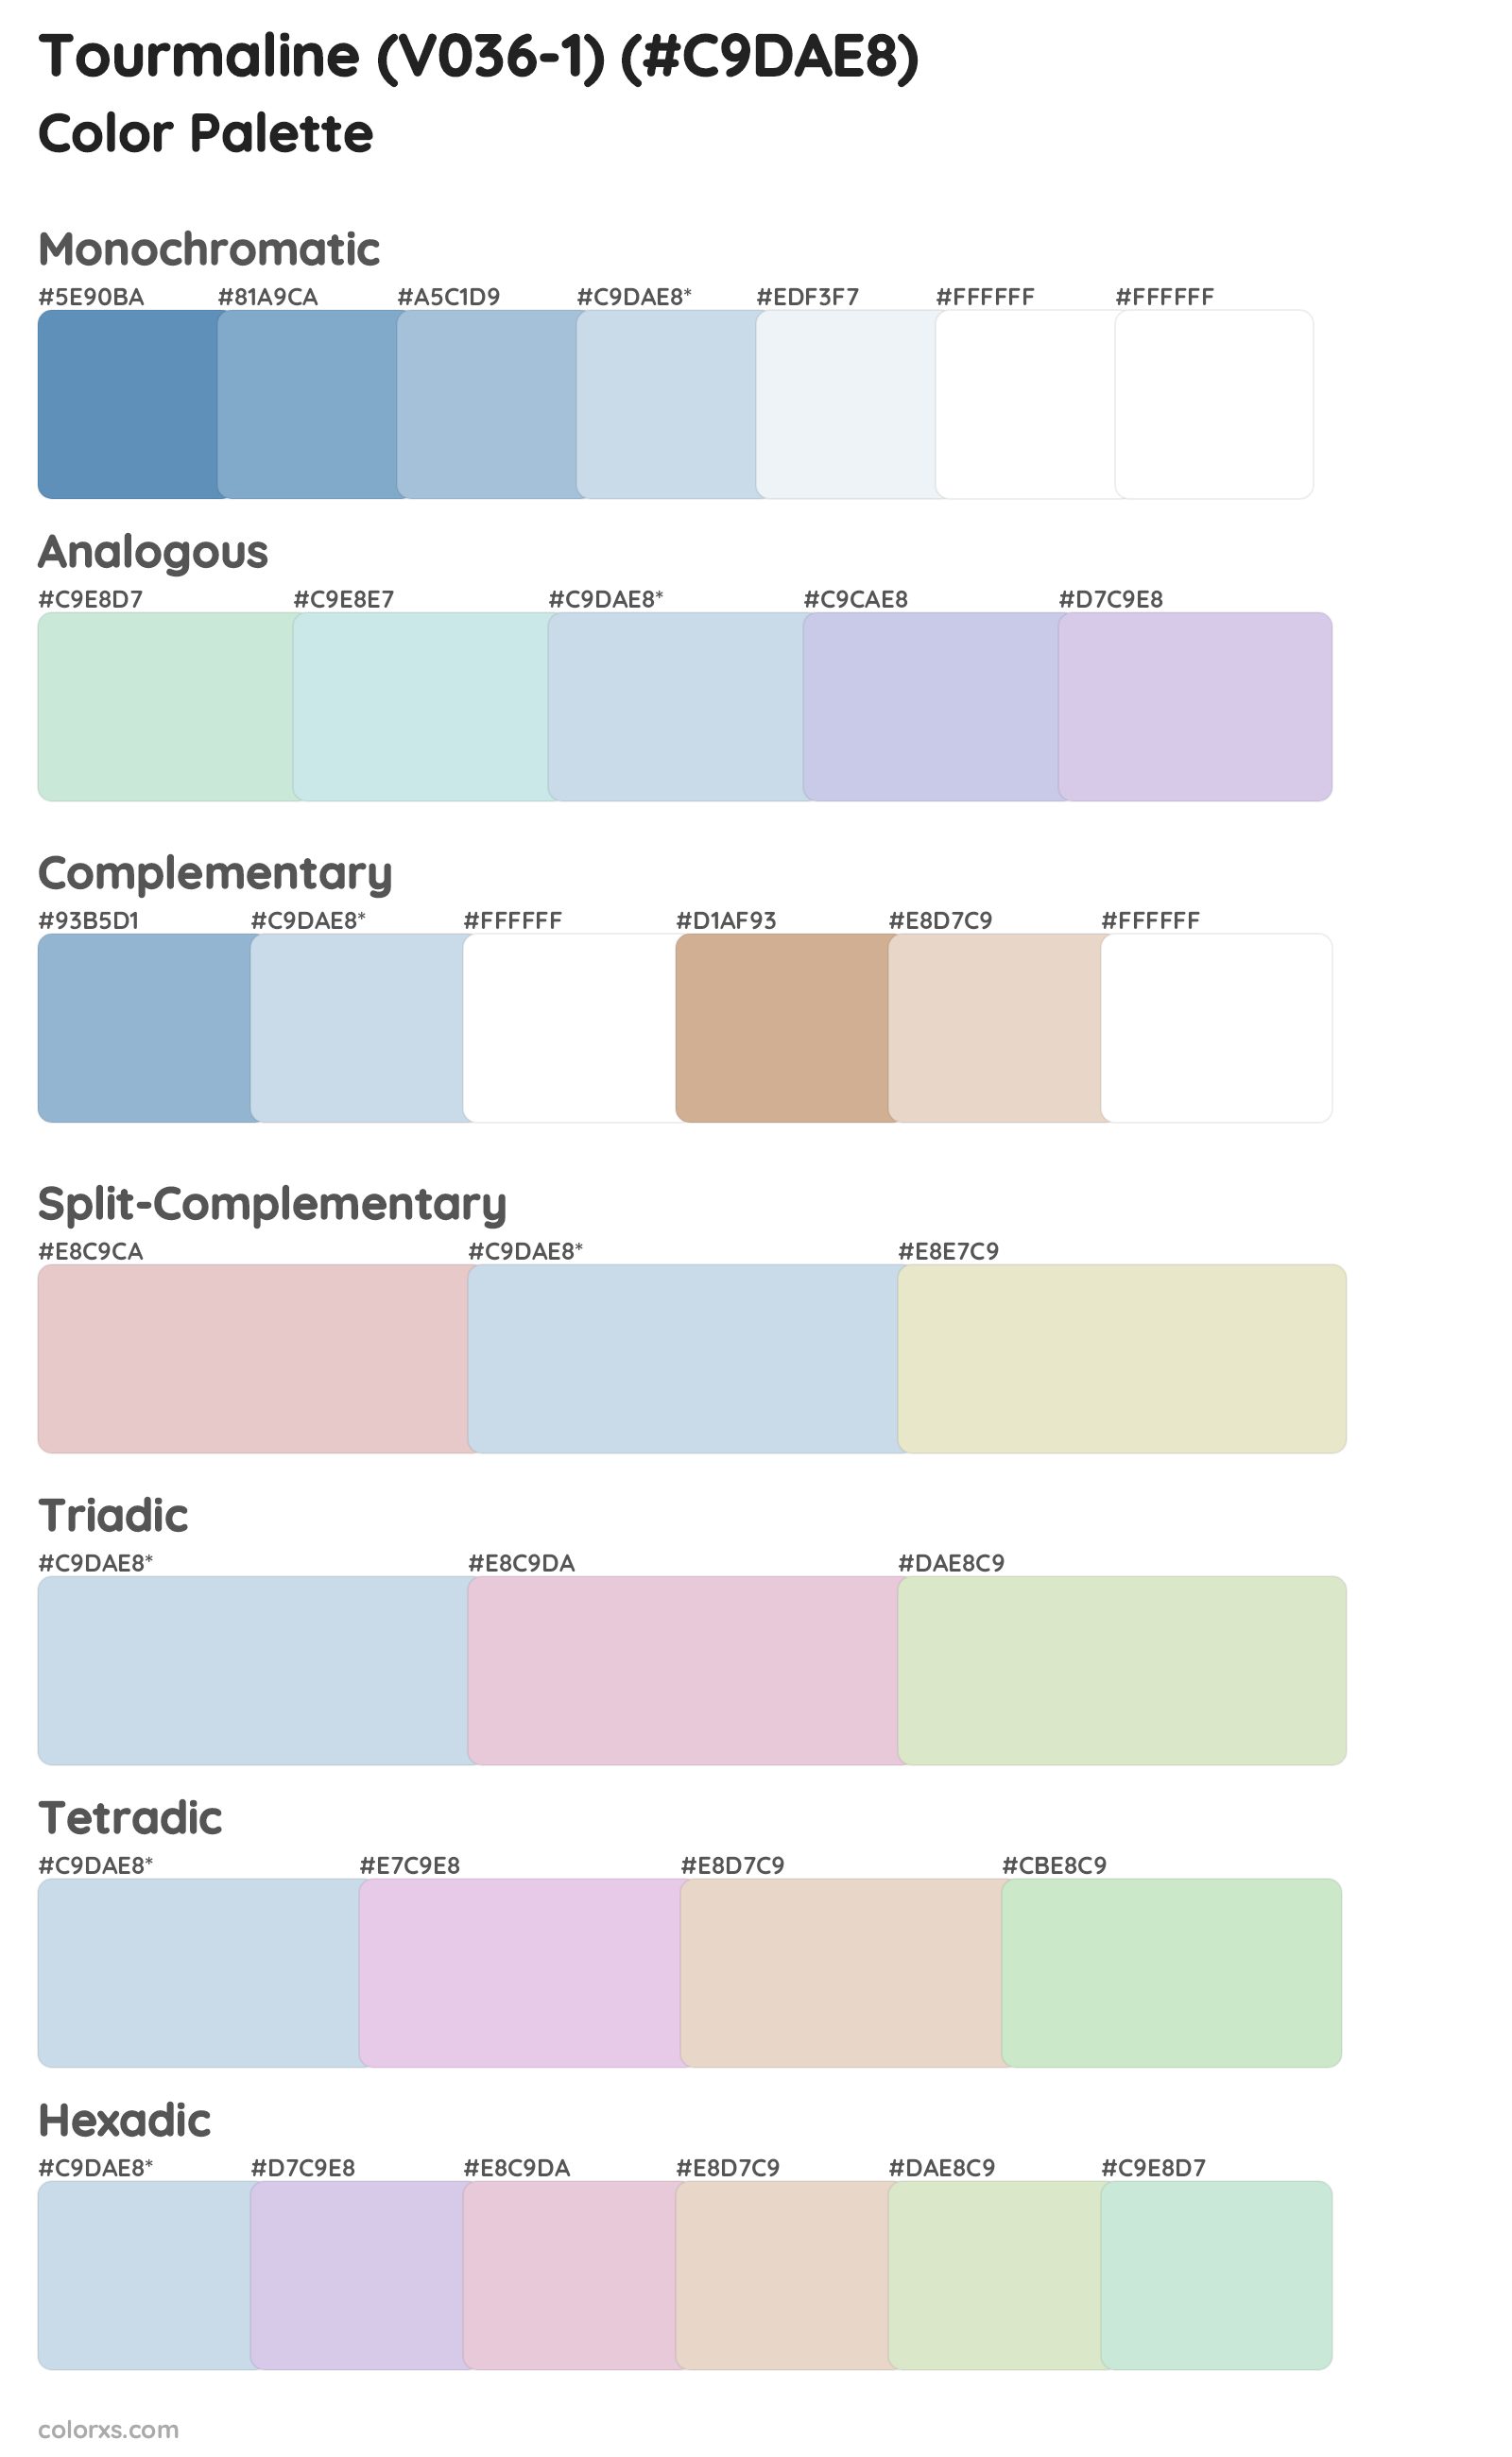 Tourmaline (V036-1) Color Scheme Palettes